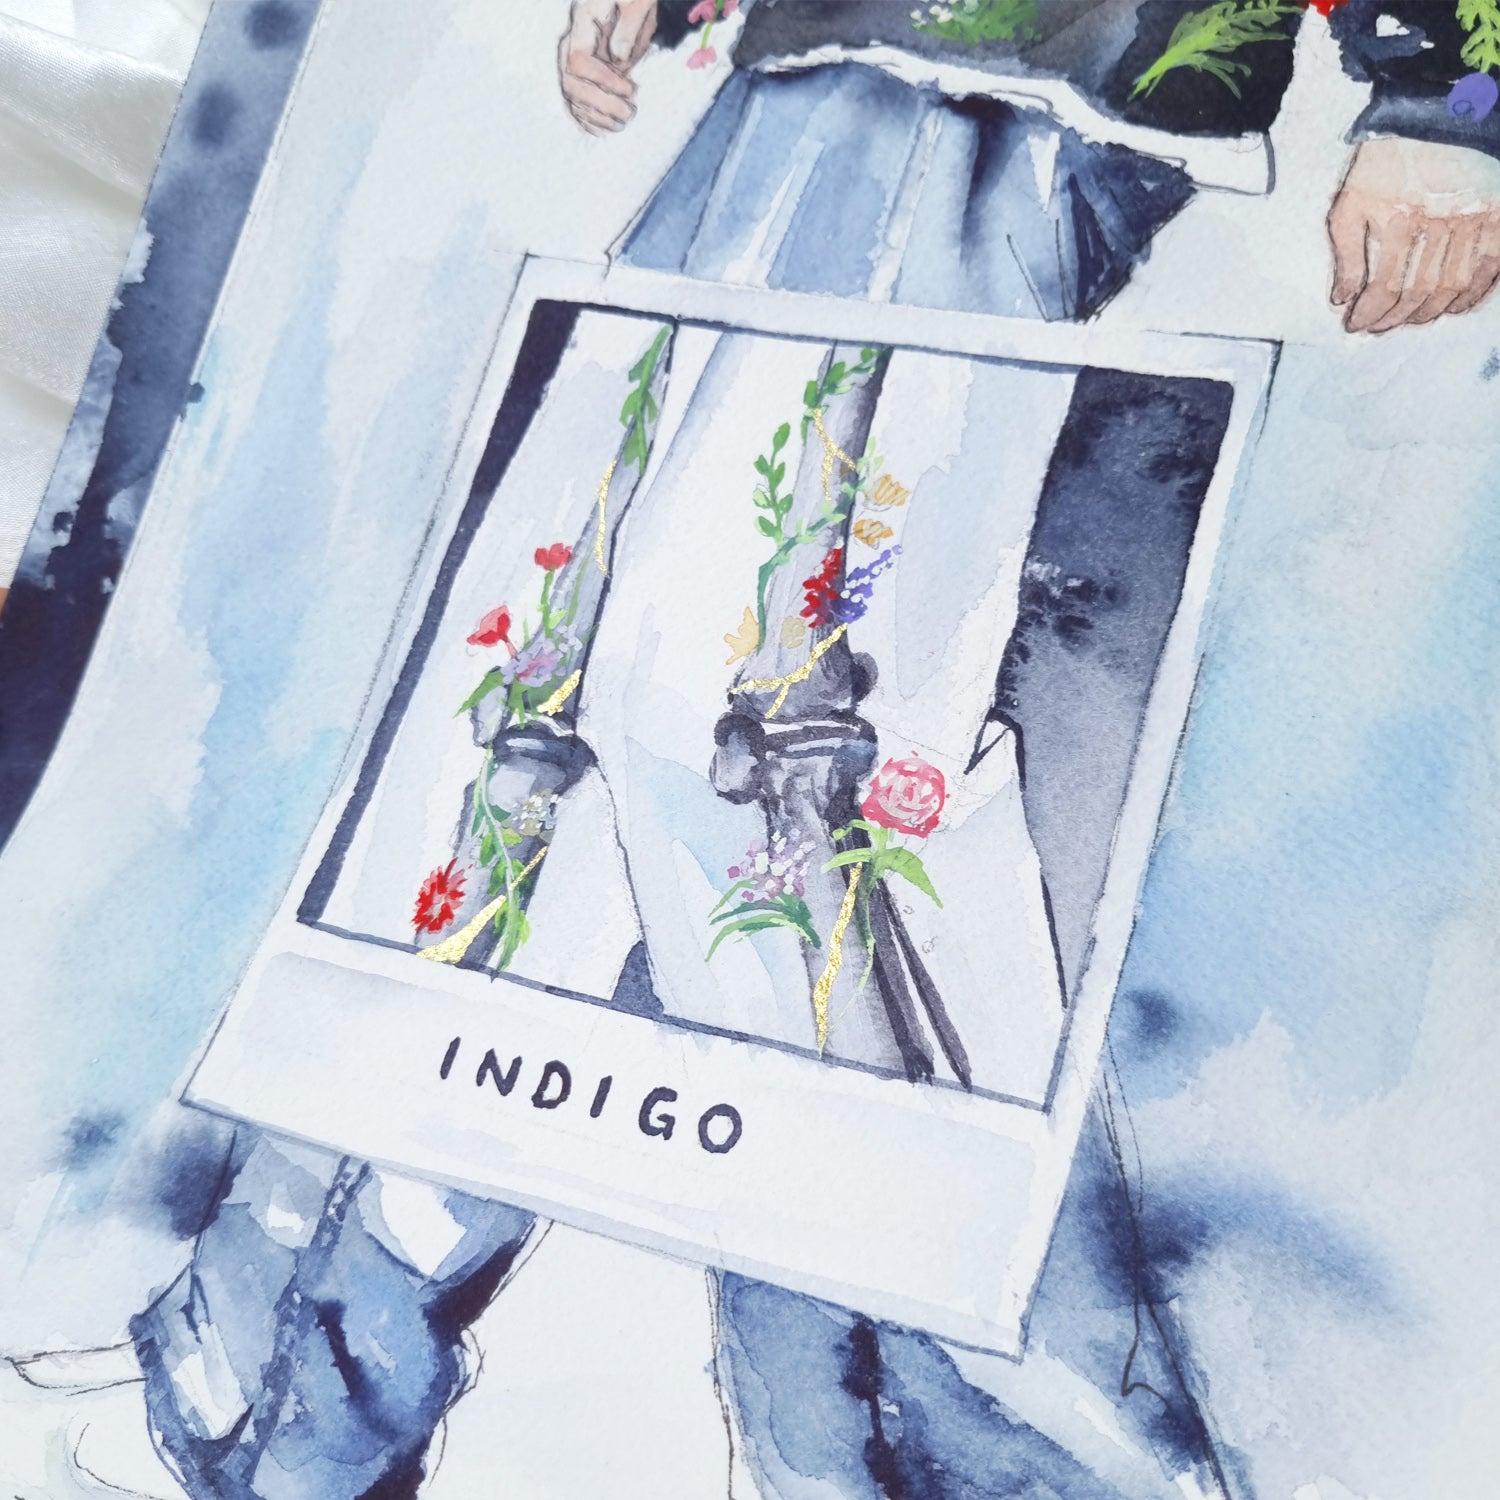 BTS INDIGO -  Original Watercolour Painting